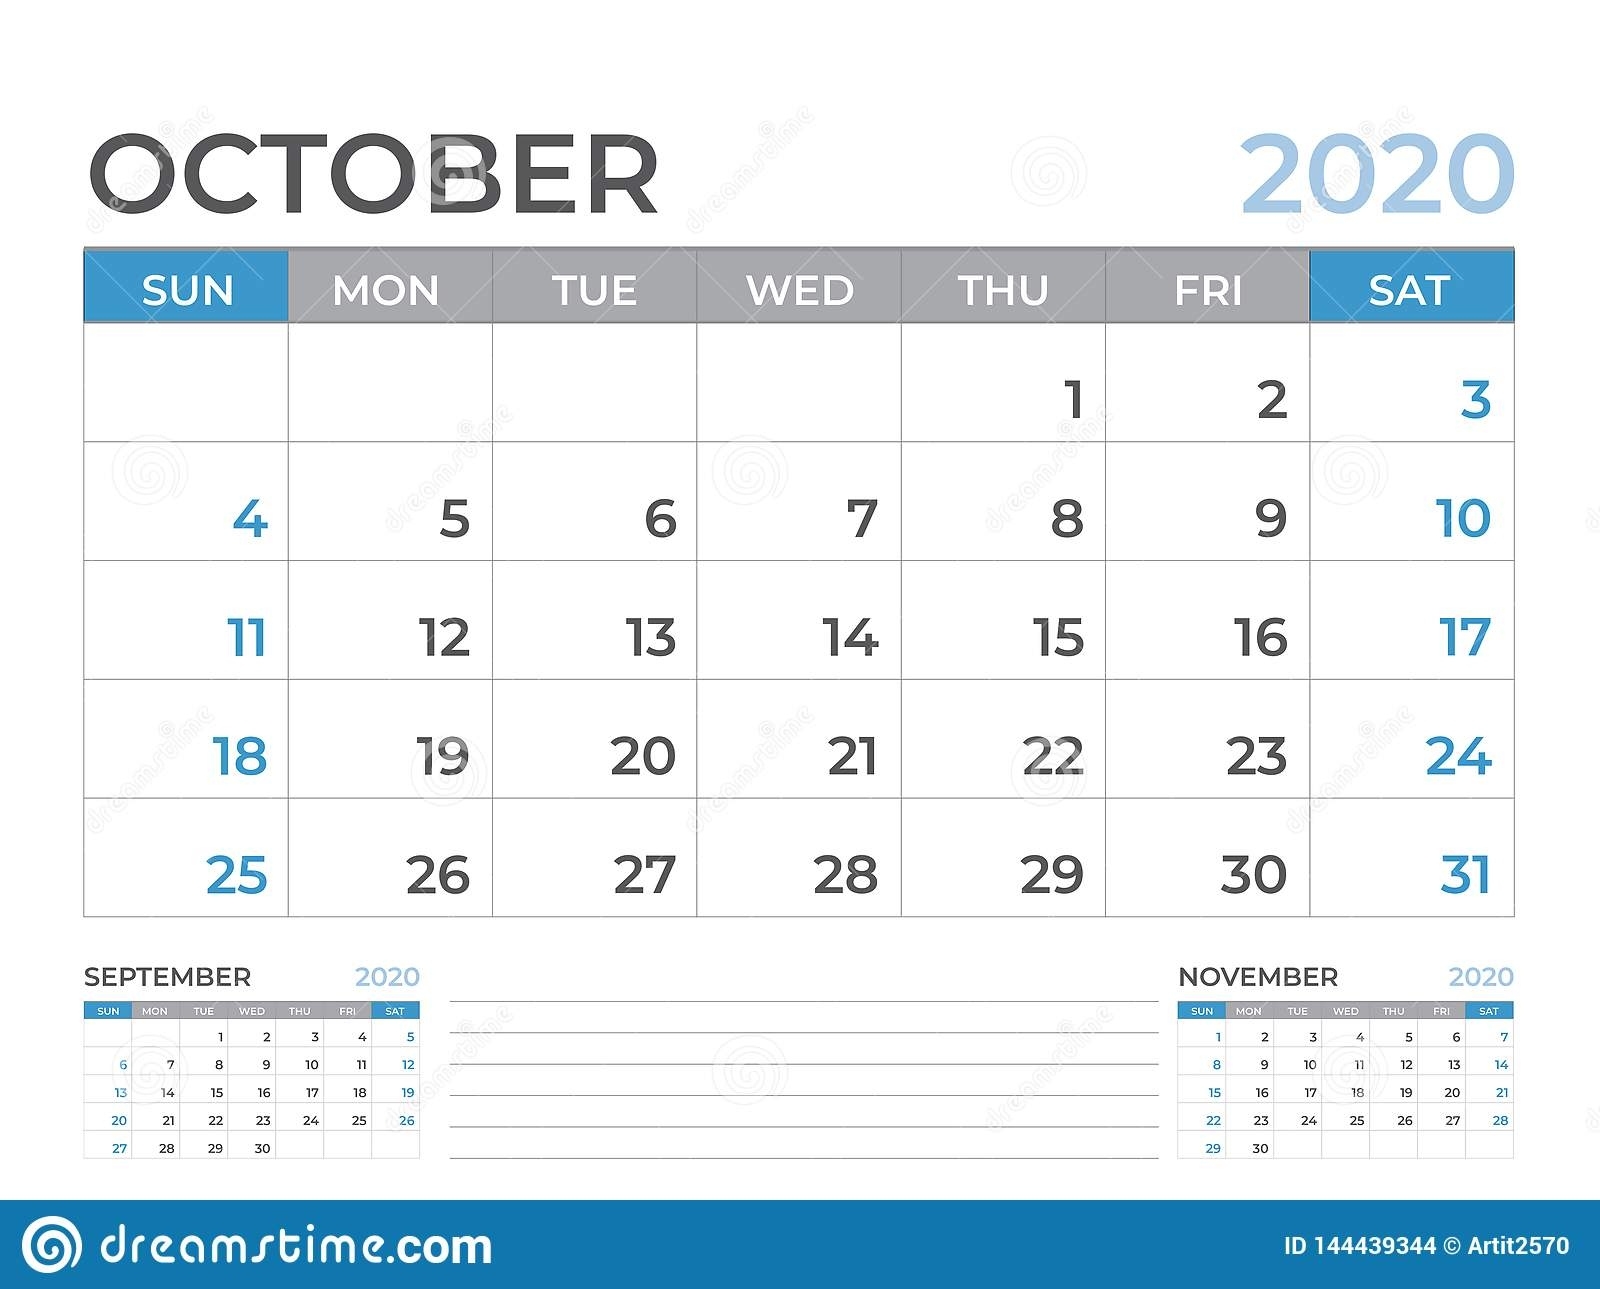 October 2020 Calendar Template, Desk Calendar Layout Size 8 6 X 6 Calendar Template